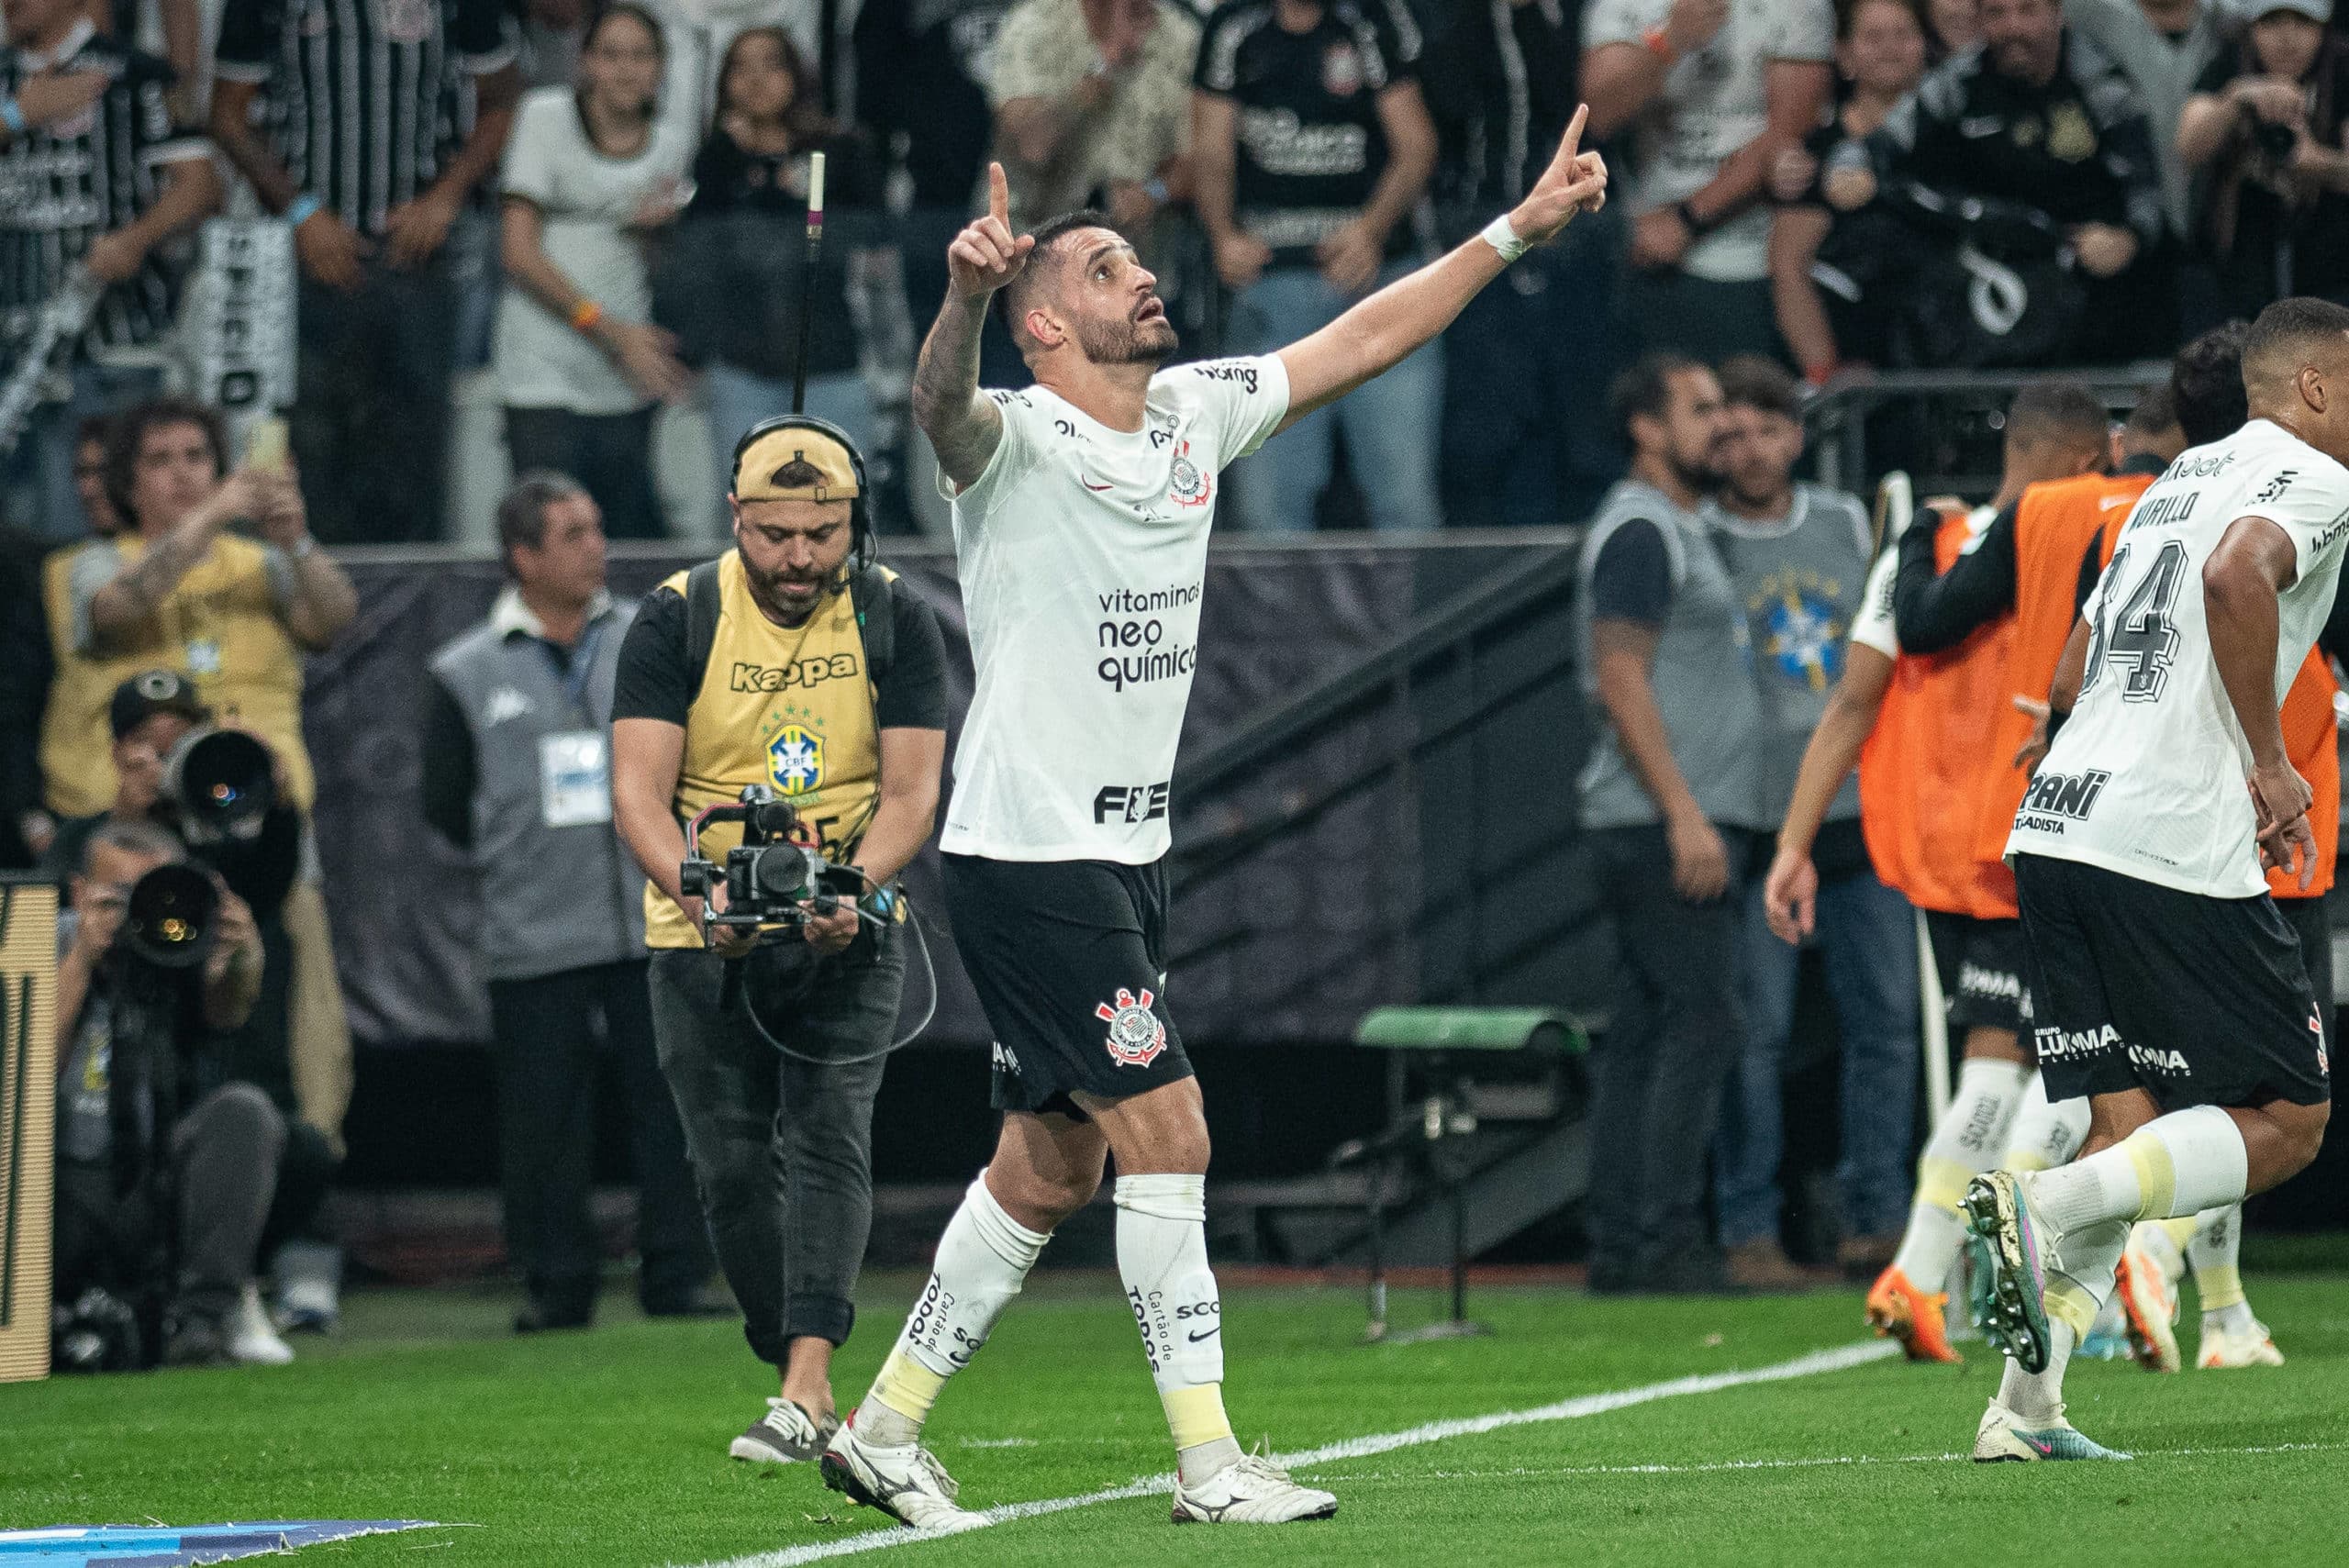 Renato Augusto marcou os dois gols do Corinthians